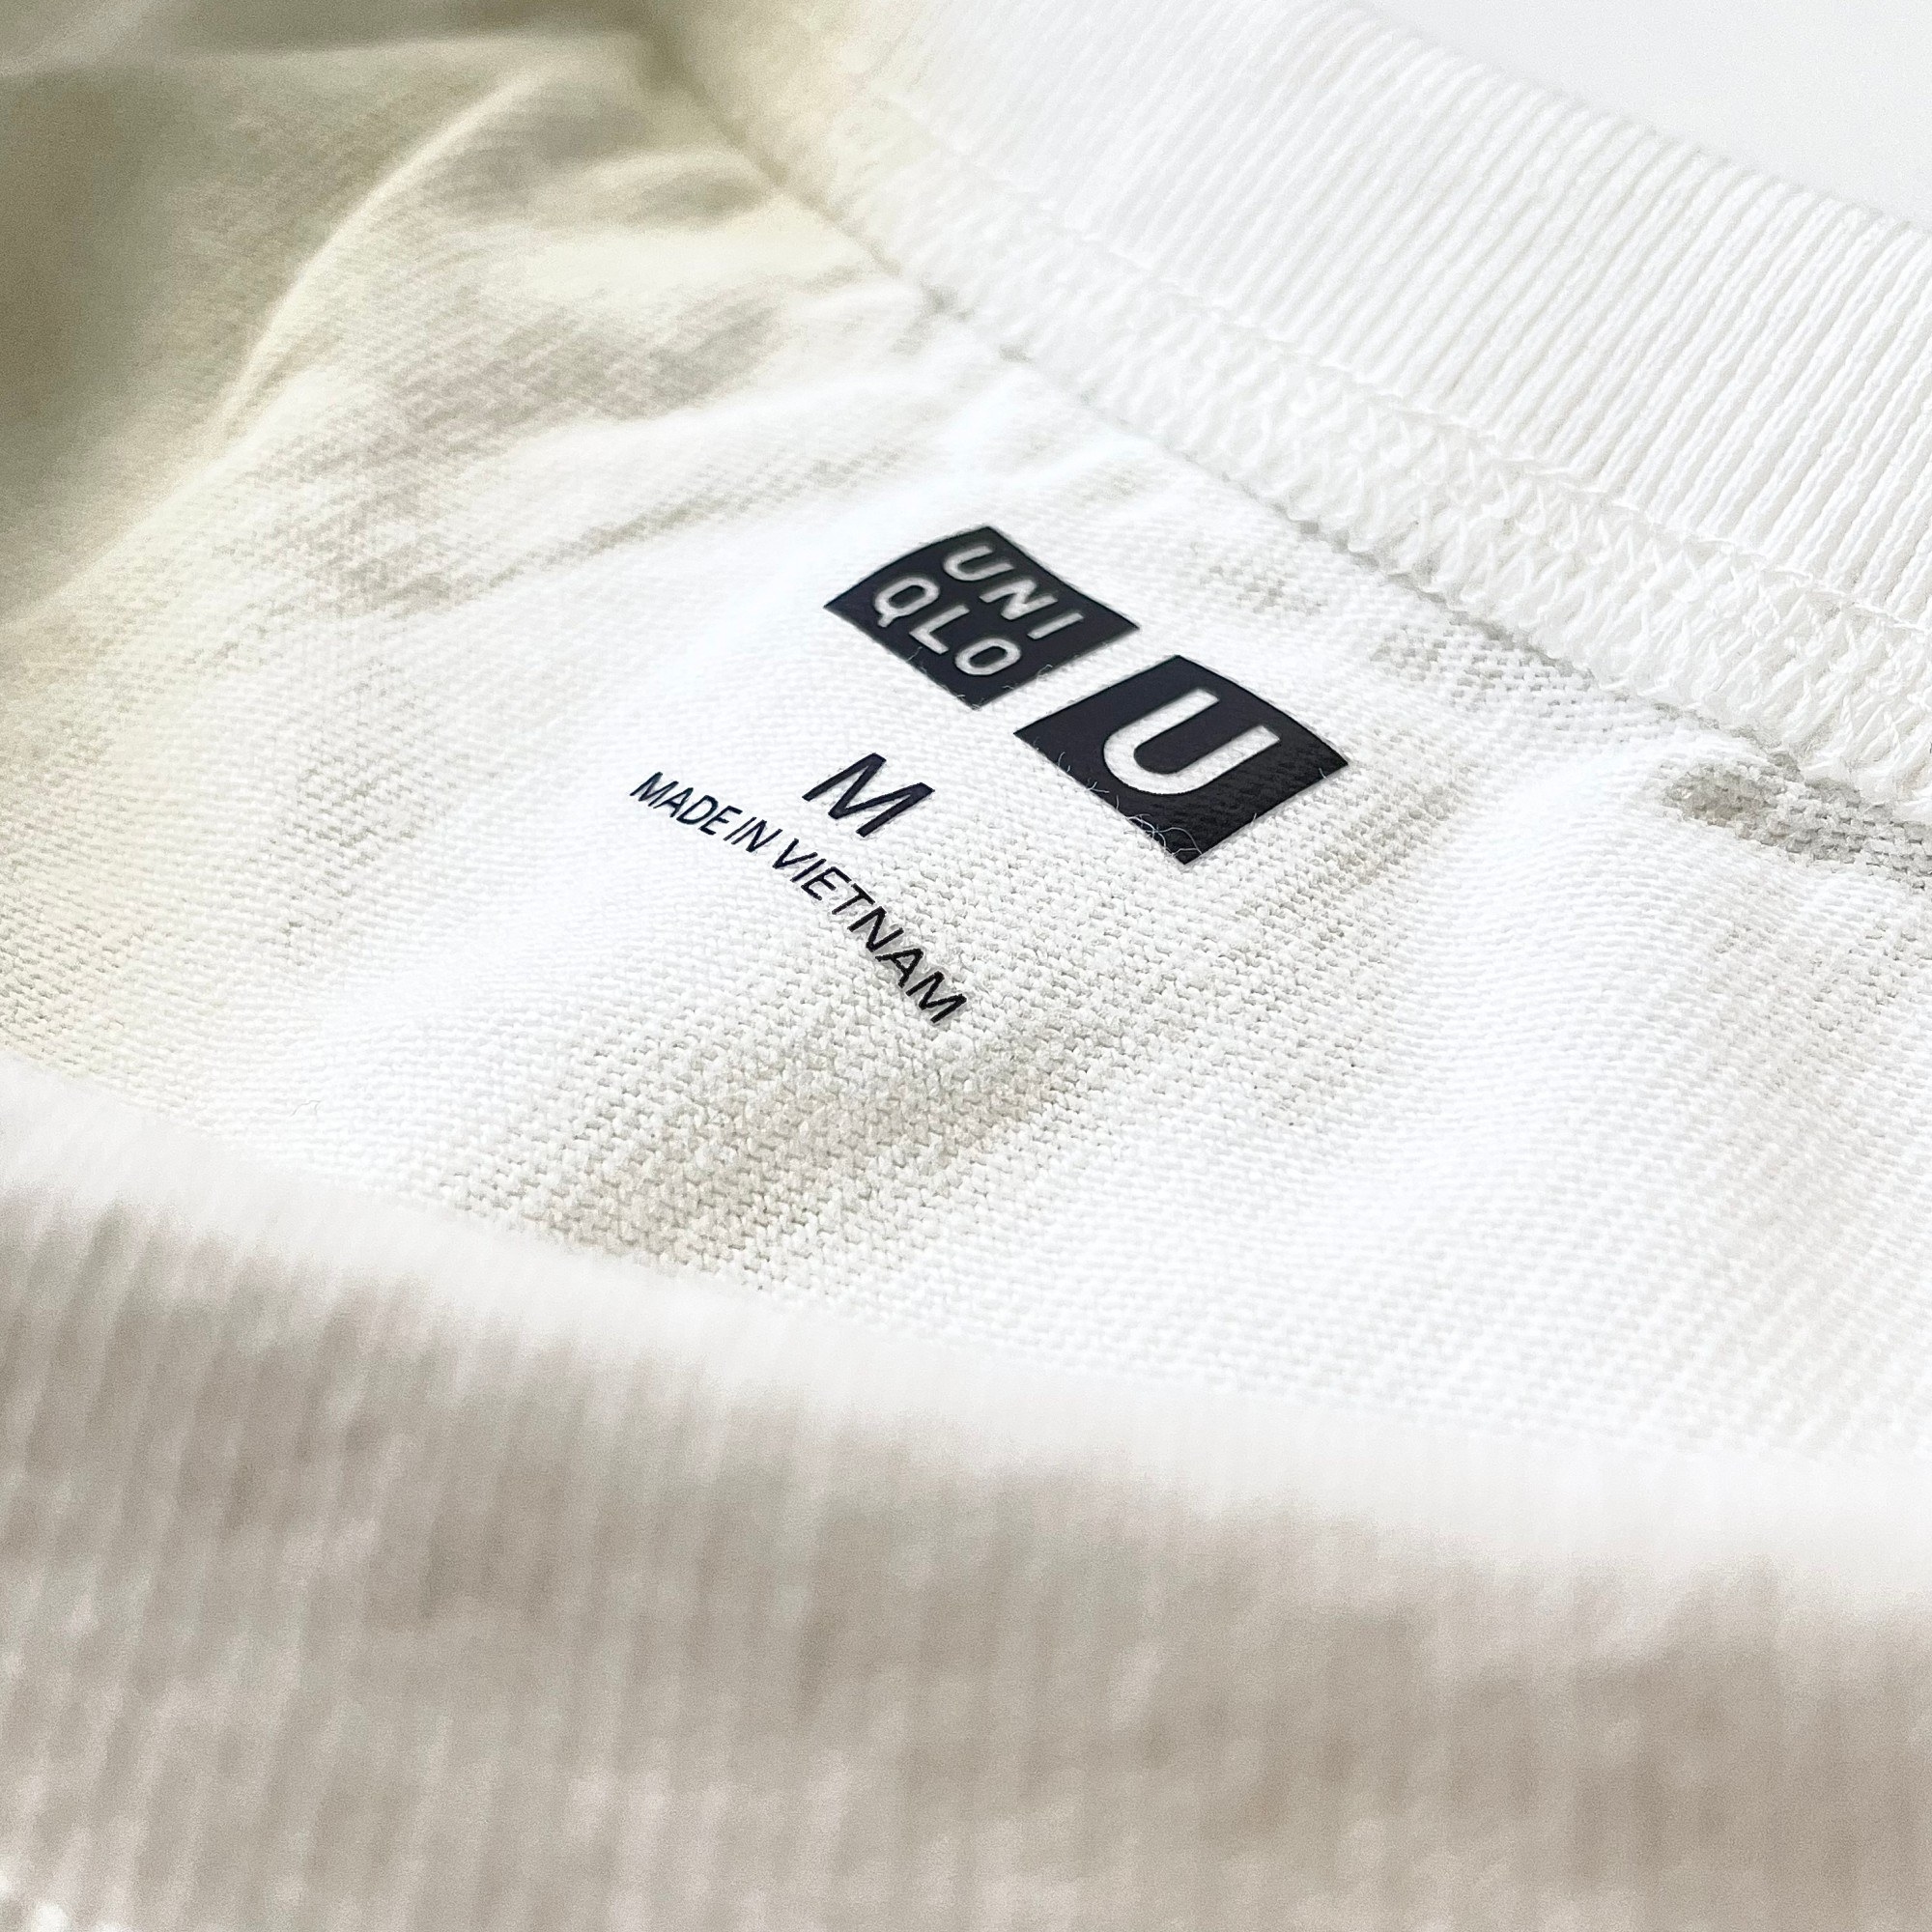 UNIQLO（ユニクロ）のおすすめのメンズアイテム「クルーネックTシャツ（半袖）」